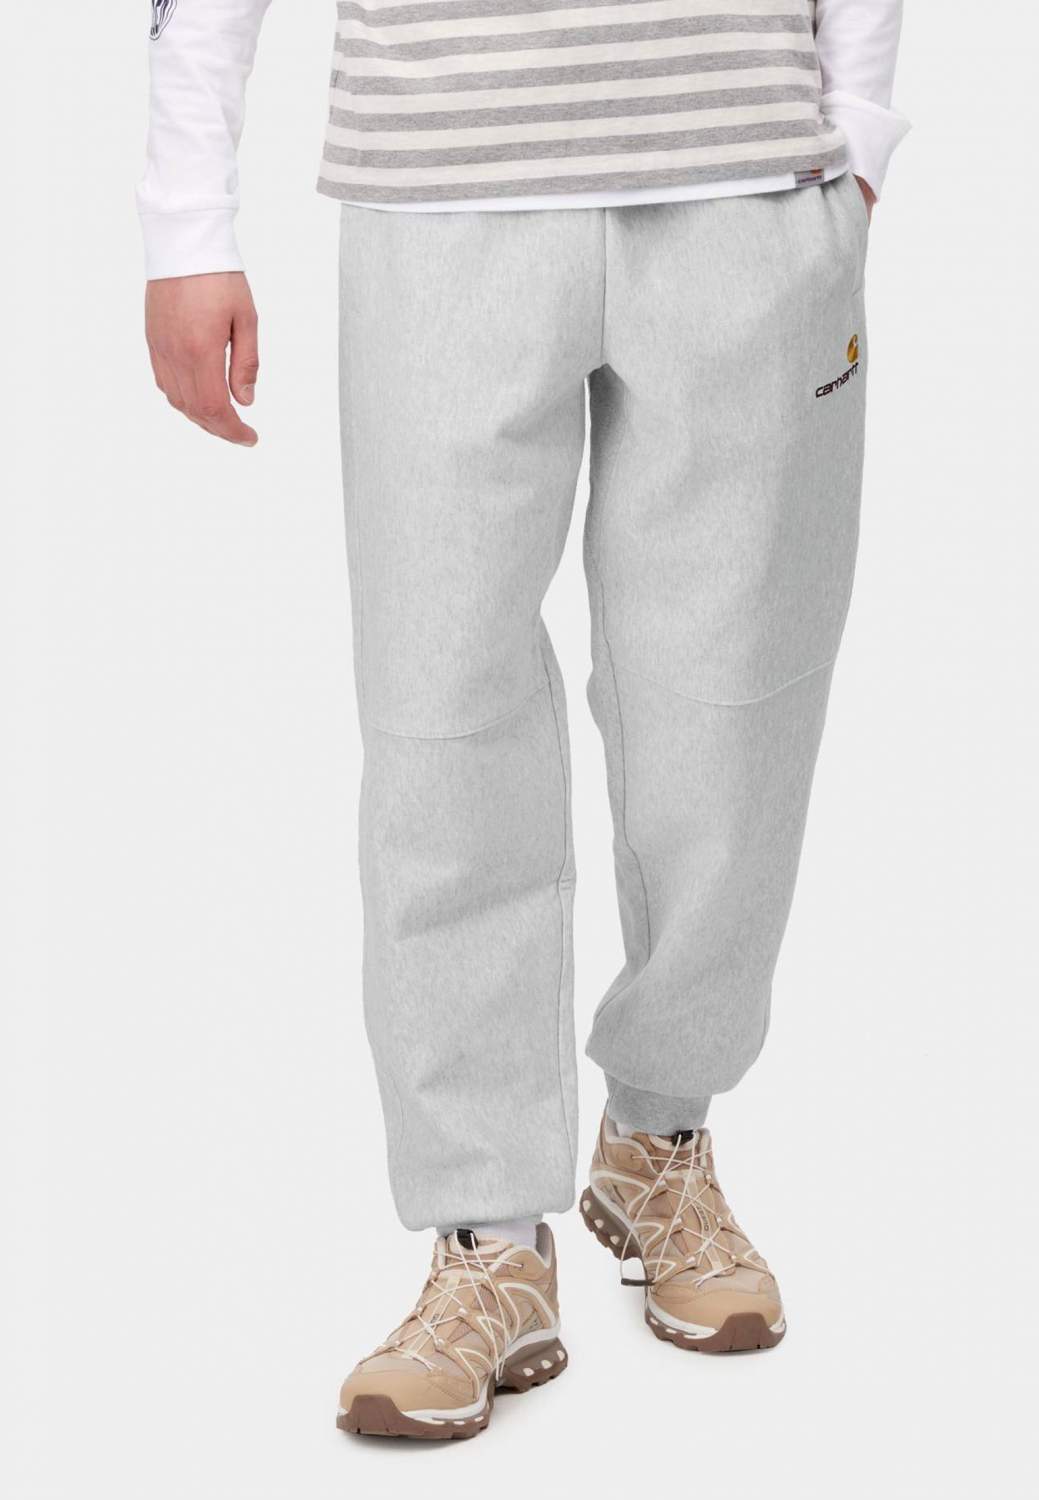 Спортивные брюки мужские Carhartt WIP 138140 серые XL - купить в Москве,цены на Мегамаркет